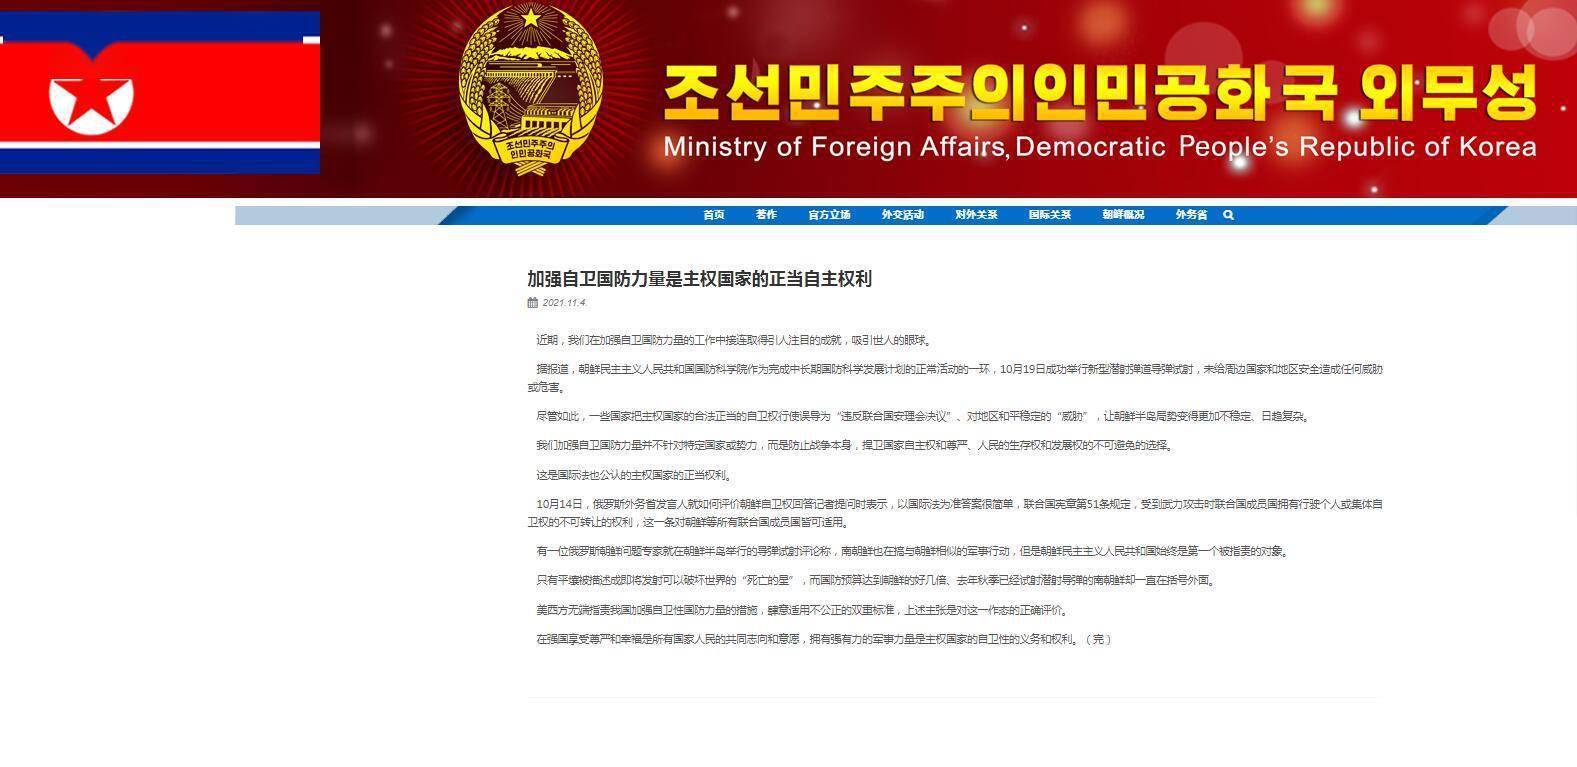 朝鲜外务省网站刊文：加强自卫国防力量是主权国家的正当自主权利